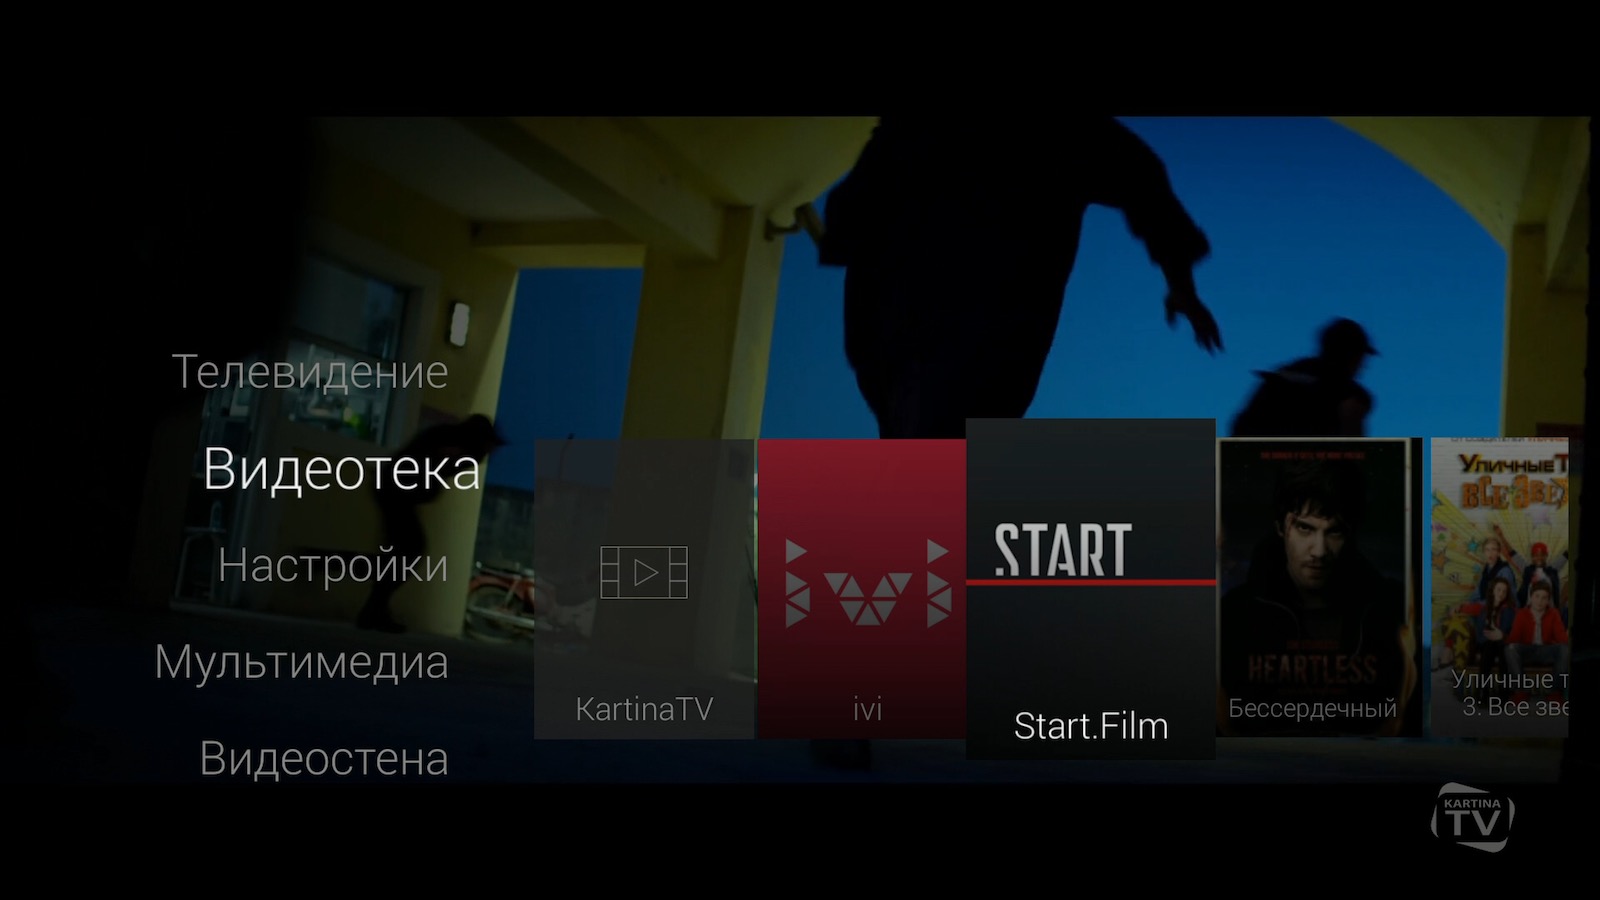 Зайдите в главное меню, выберите подраздел «Видеотека» и в открывшемся меню нажмите на Start.Film